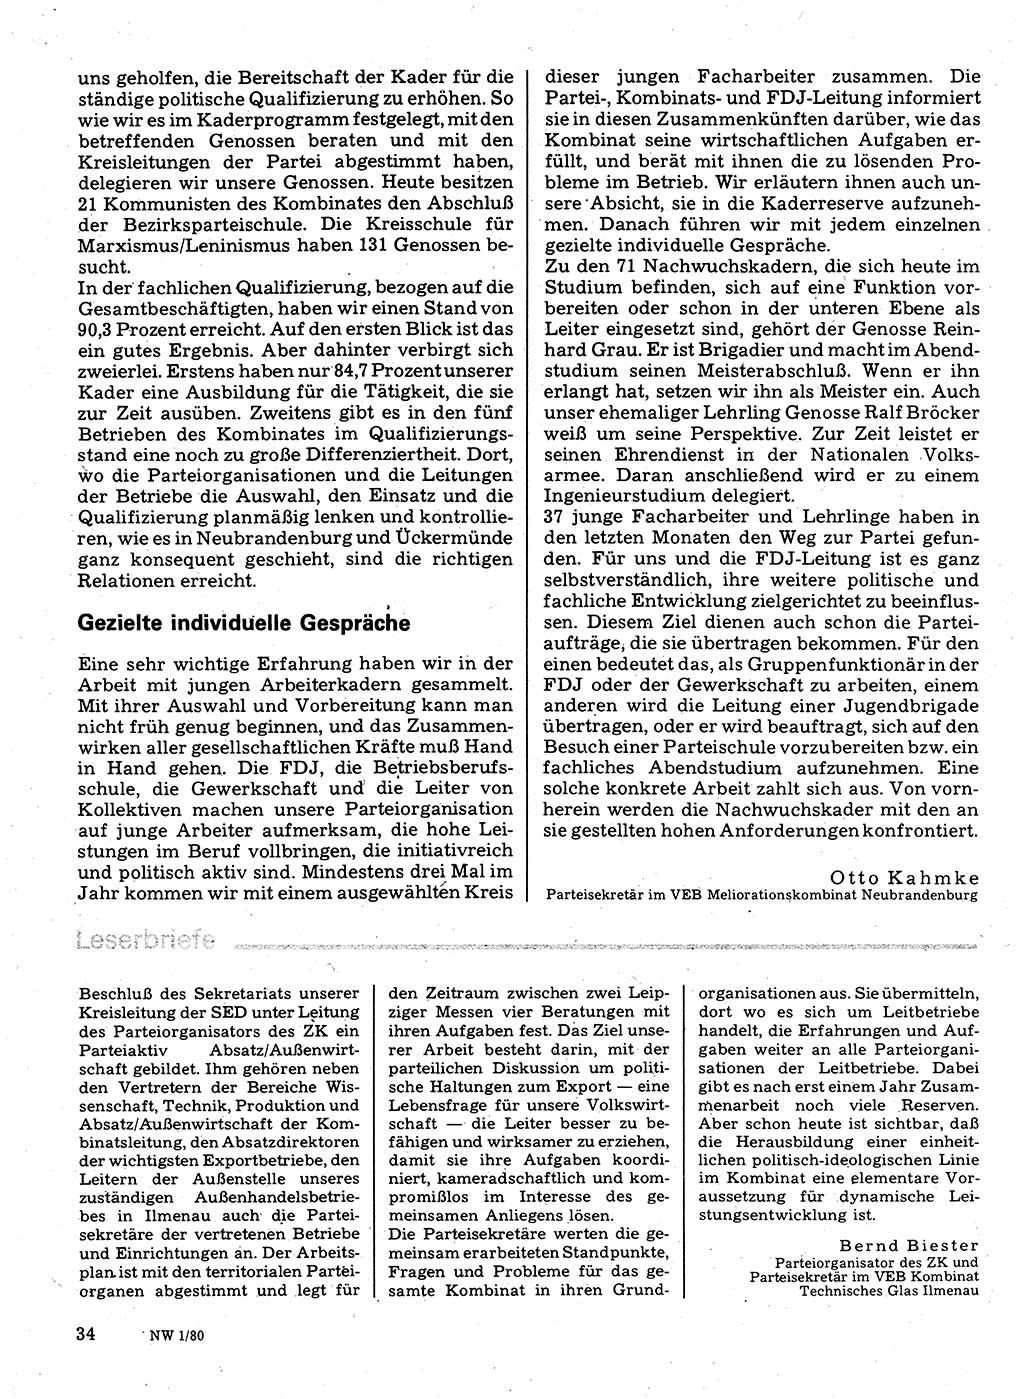 Neuer Weg (NW), Organ des Zentralkomitees (ZK) der SED (Sozialistische Einheitspartei Deutschlands) für Fragen des Parteilebens, 35. Jahrgang [Deutsche Demokratische Republik (DDR)] 1980, Seite 34 (NW ZK SED DDR 1980, S. 34)